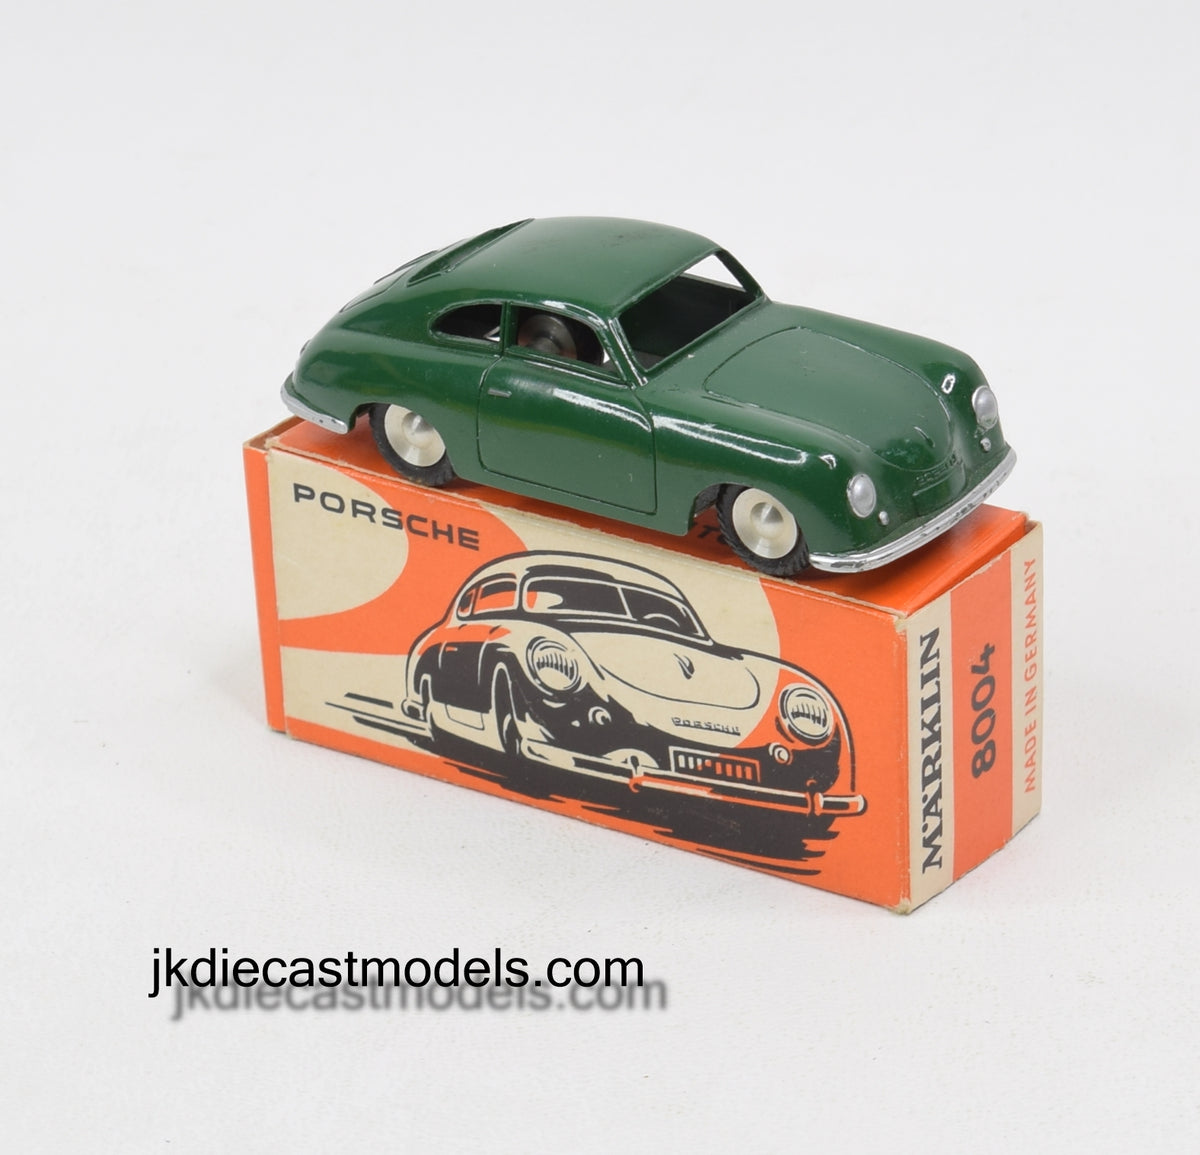 Marklin 5524/2 - 8004 Porsche Virtually Mint/Boxed (British Racing Green)